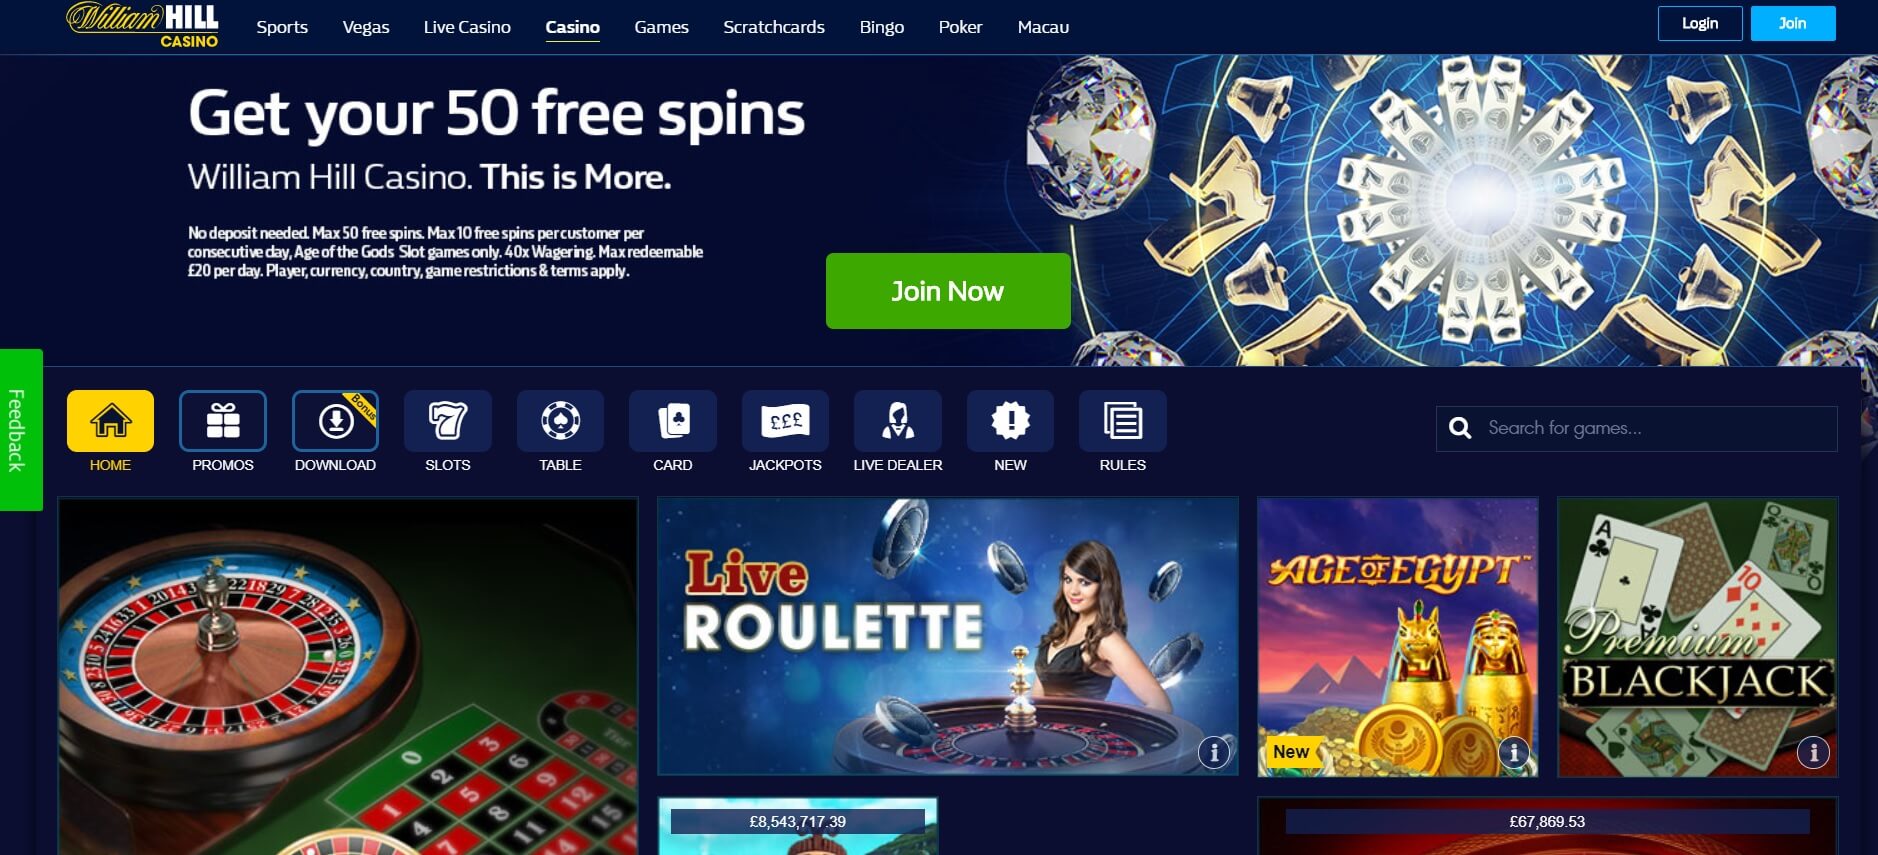 Online casino promotion temata 1 икс бет игровые автоматы официальный сайт